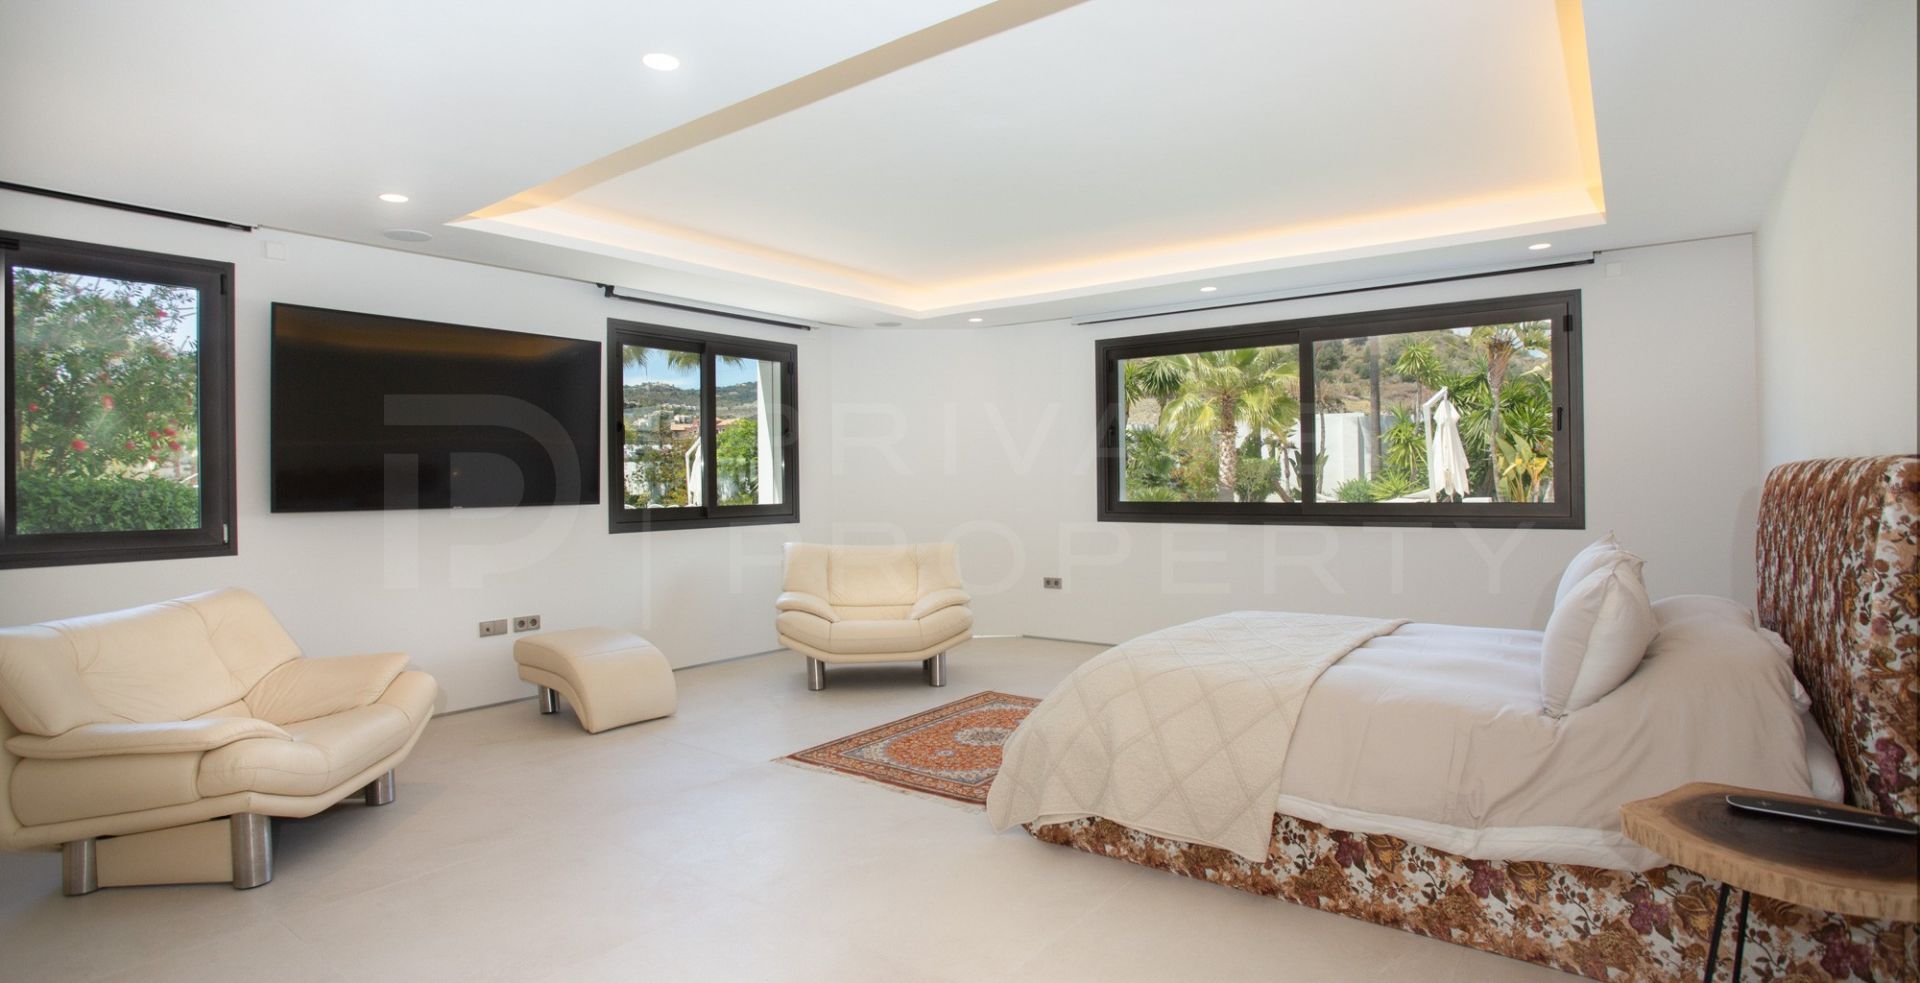 Contemporary villa for rent in Marbella